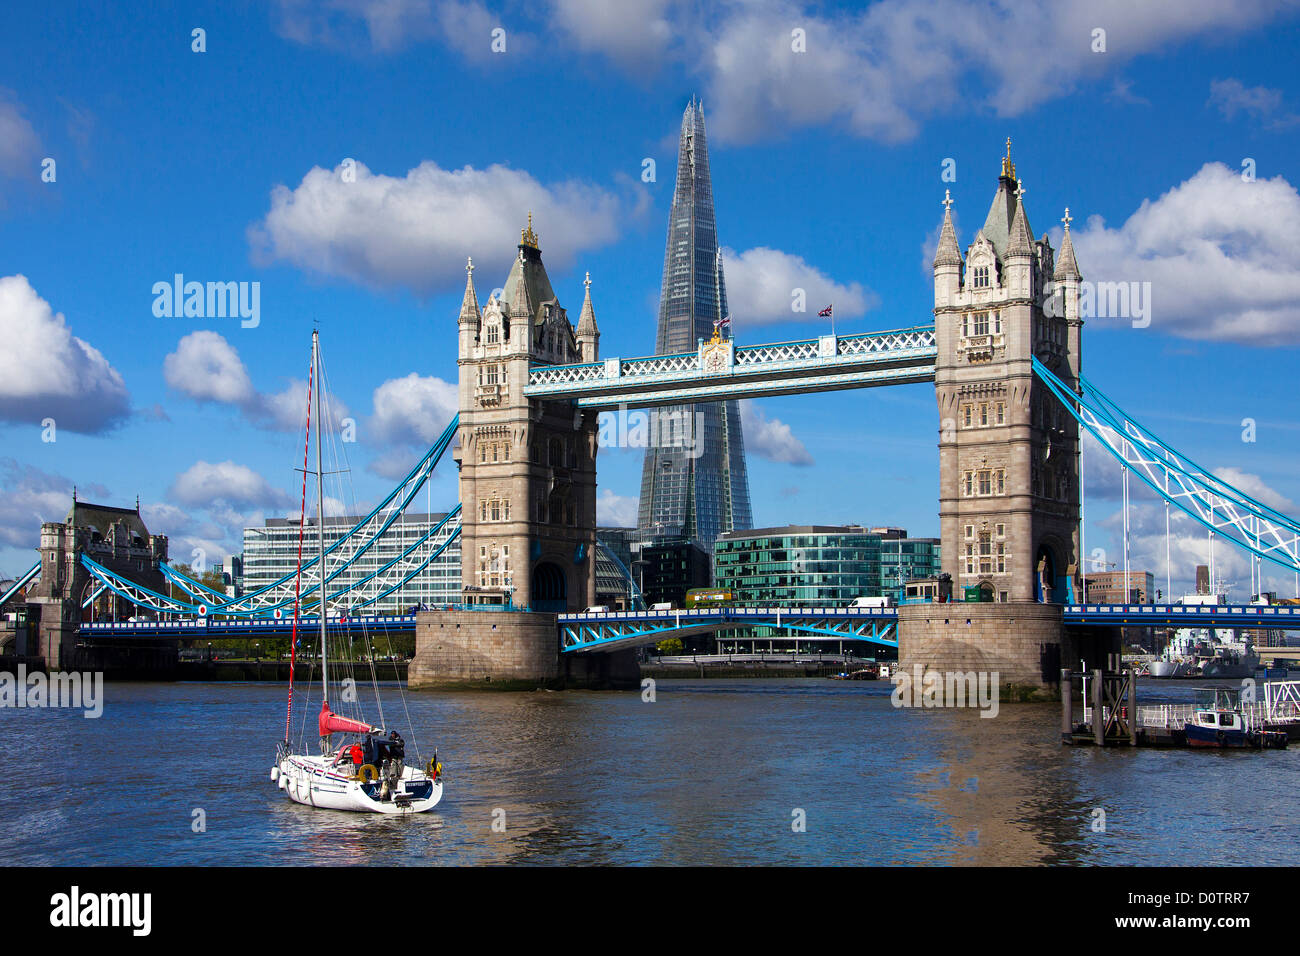 UK-Großbritannien-Europa Reisen Urlaub England London City Tower Bridge Brücke Shard-Turm-Architektur-Wolkenkratzer Stockfoto